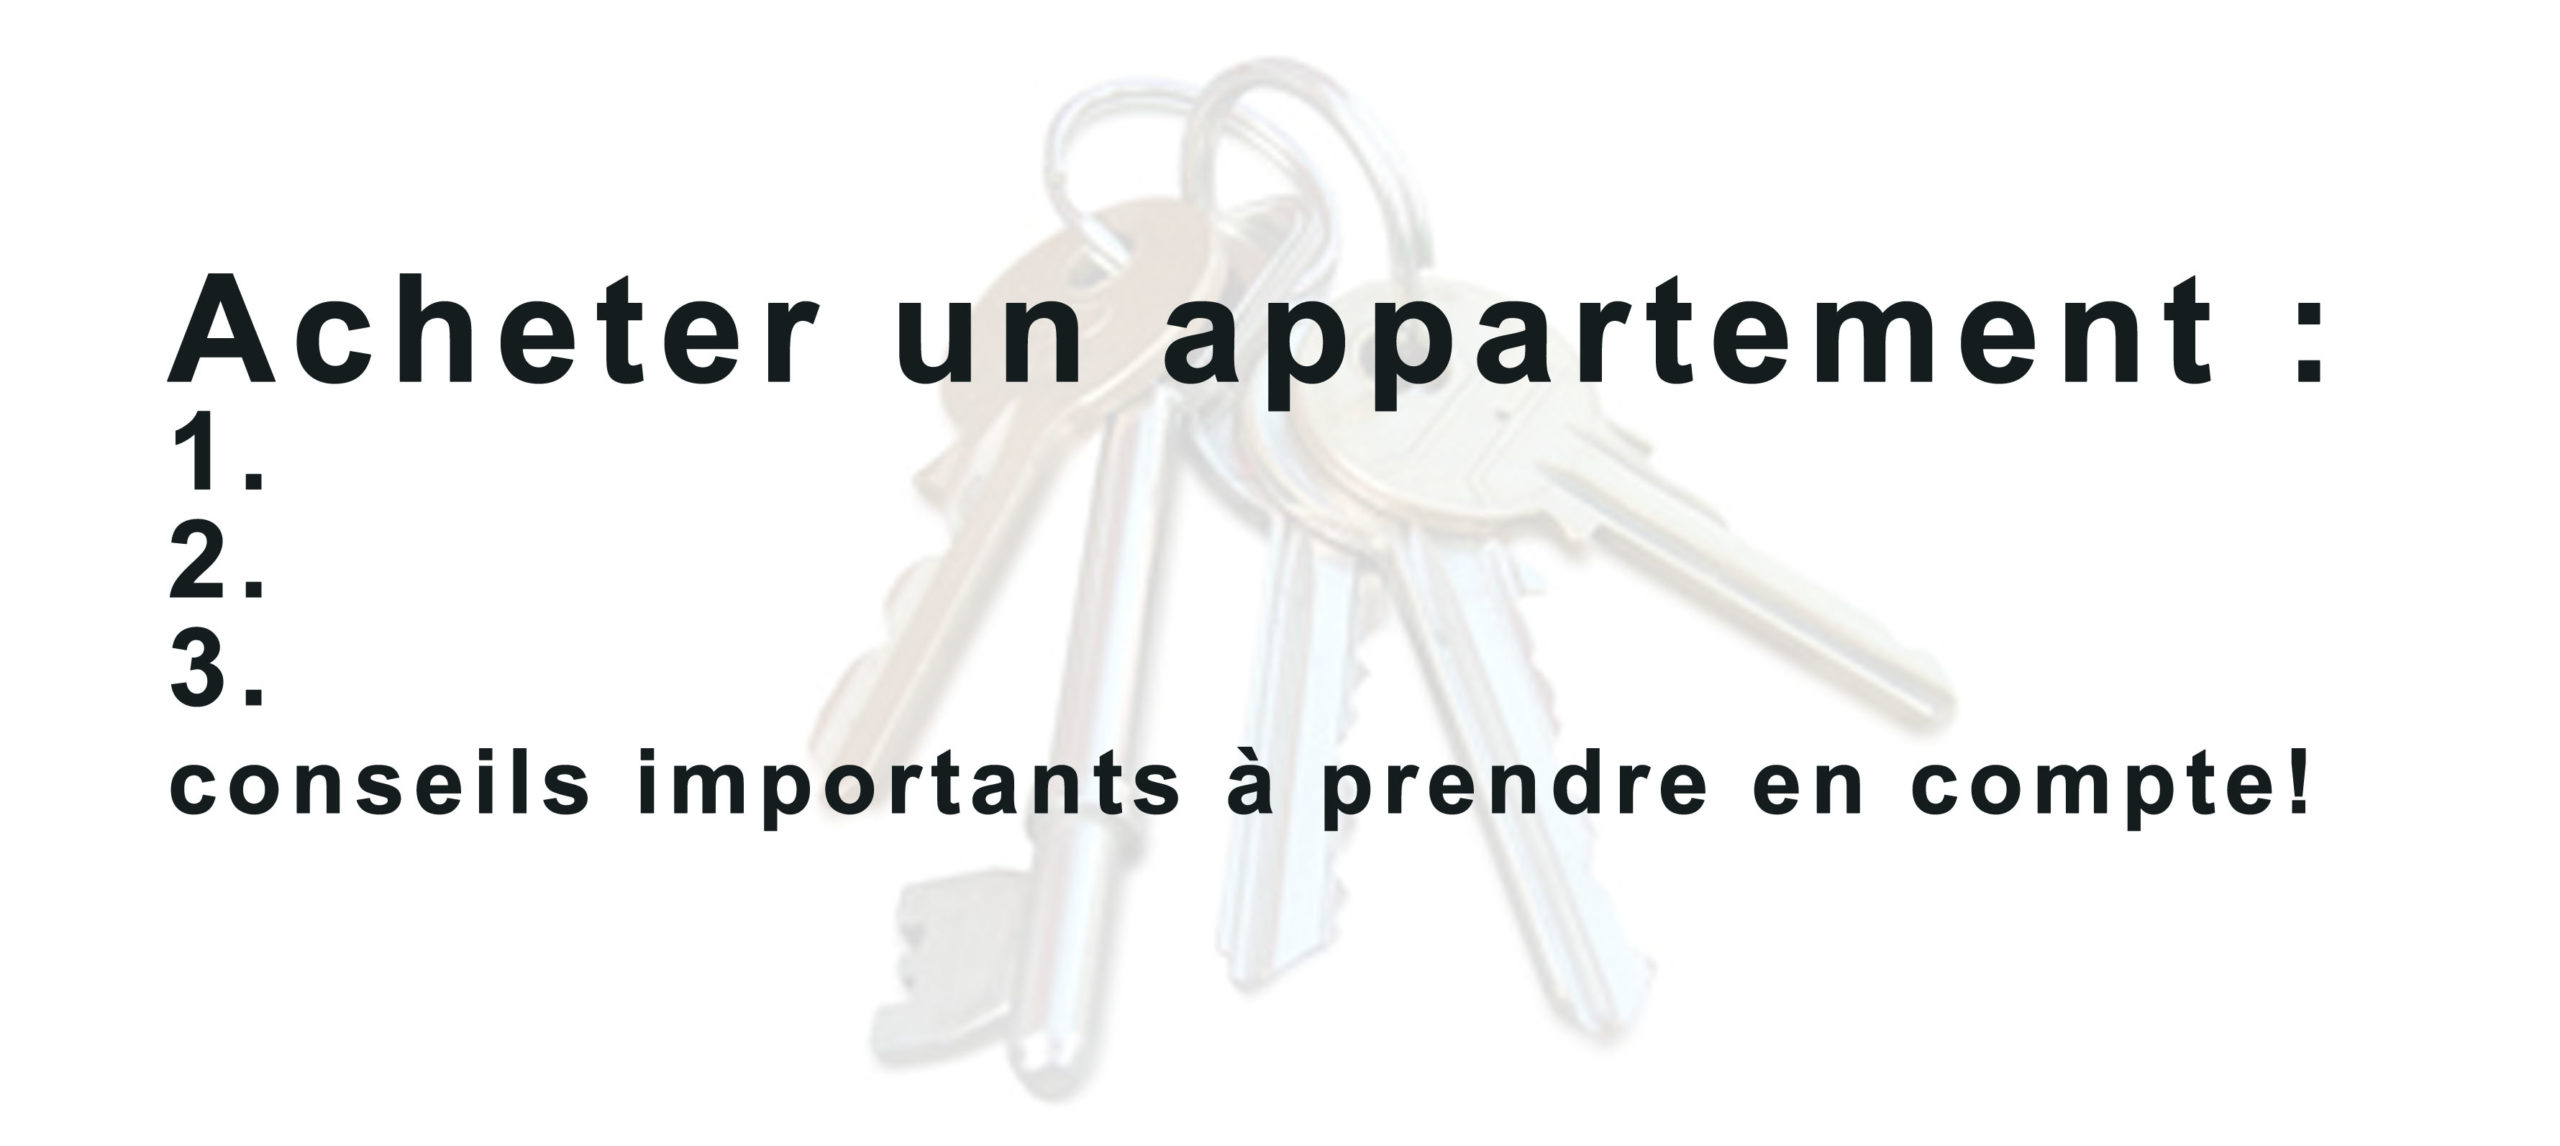 Acheter un appartement : 3 conseils importants ! - Agence Oz by Cath, architecture d'intérieur